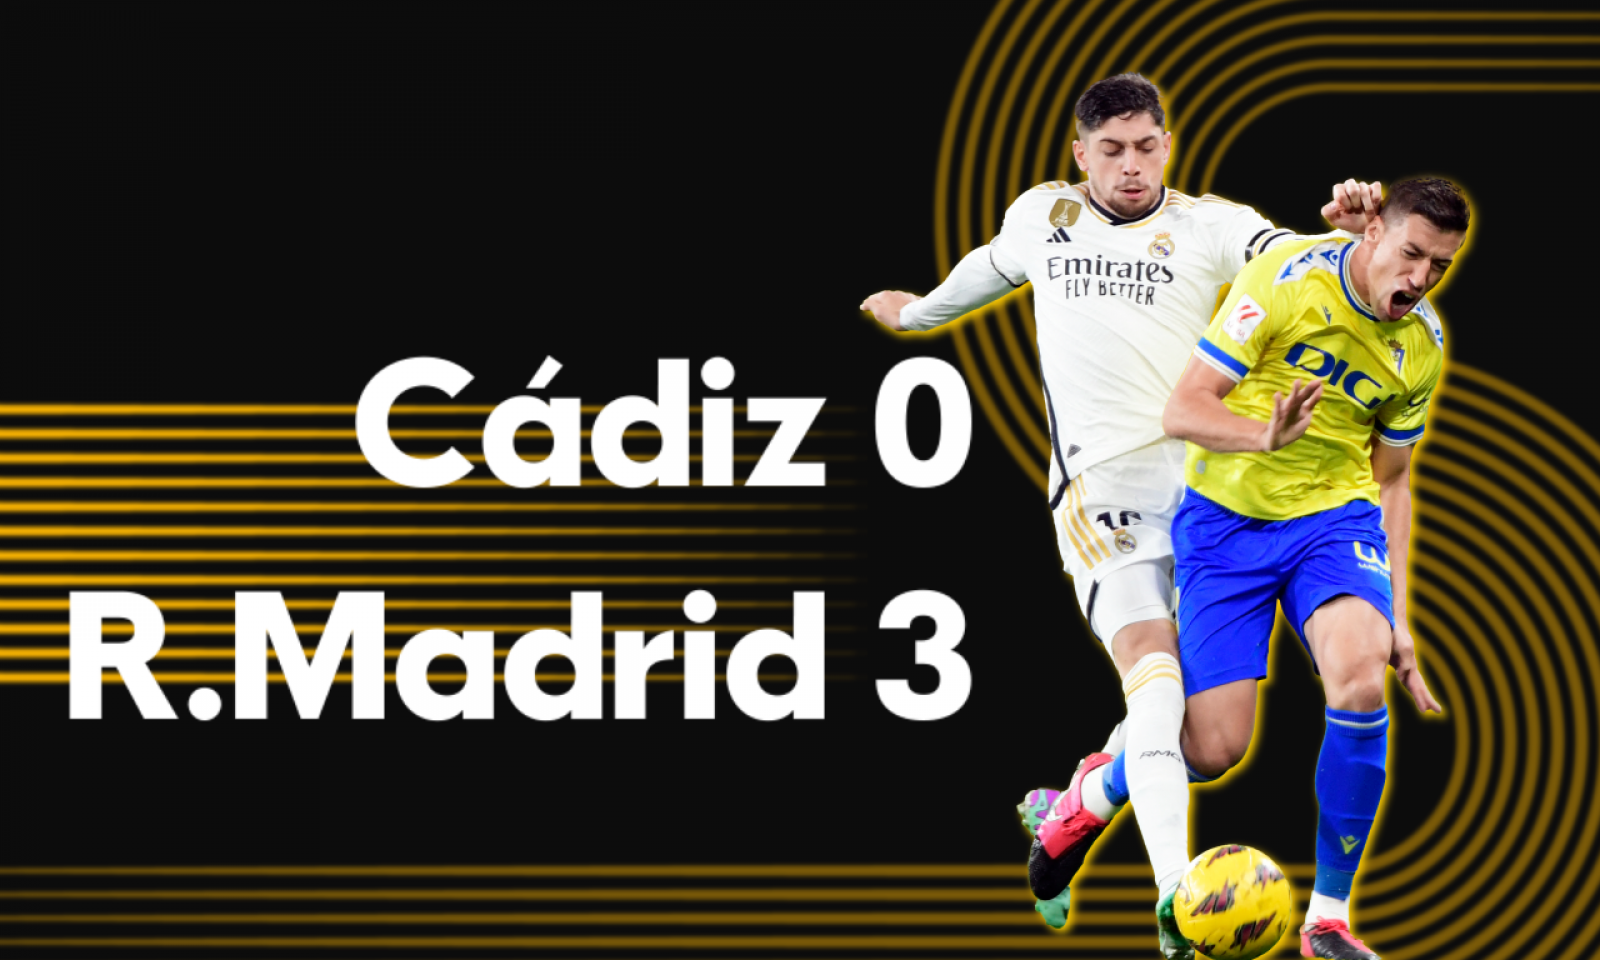 Cádiz CF 0 - R.Madrid 3